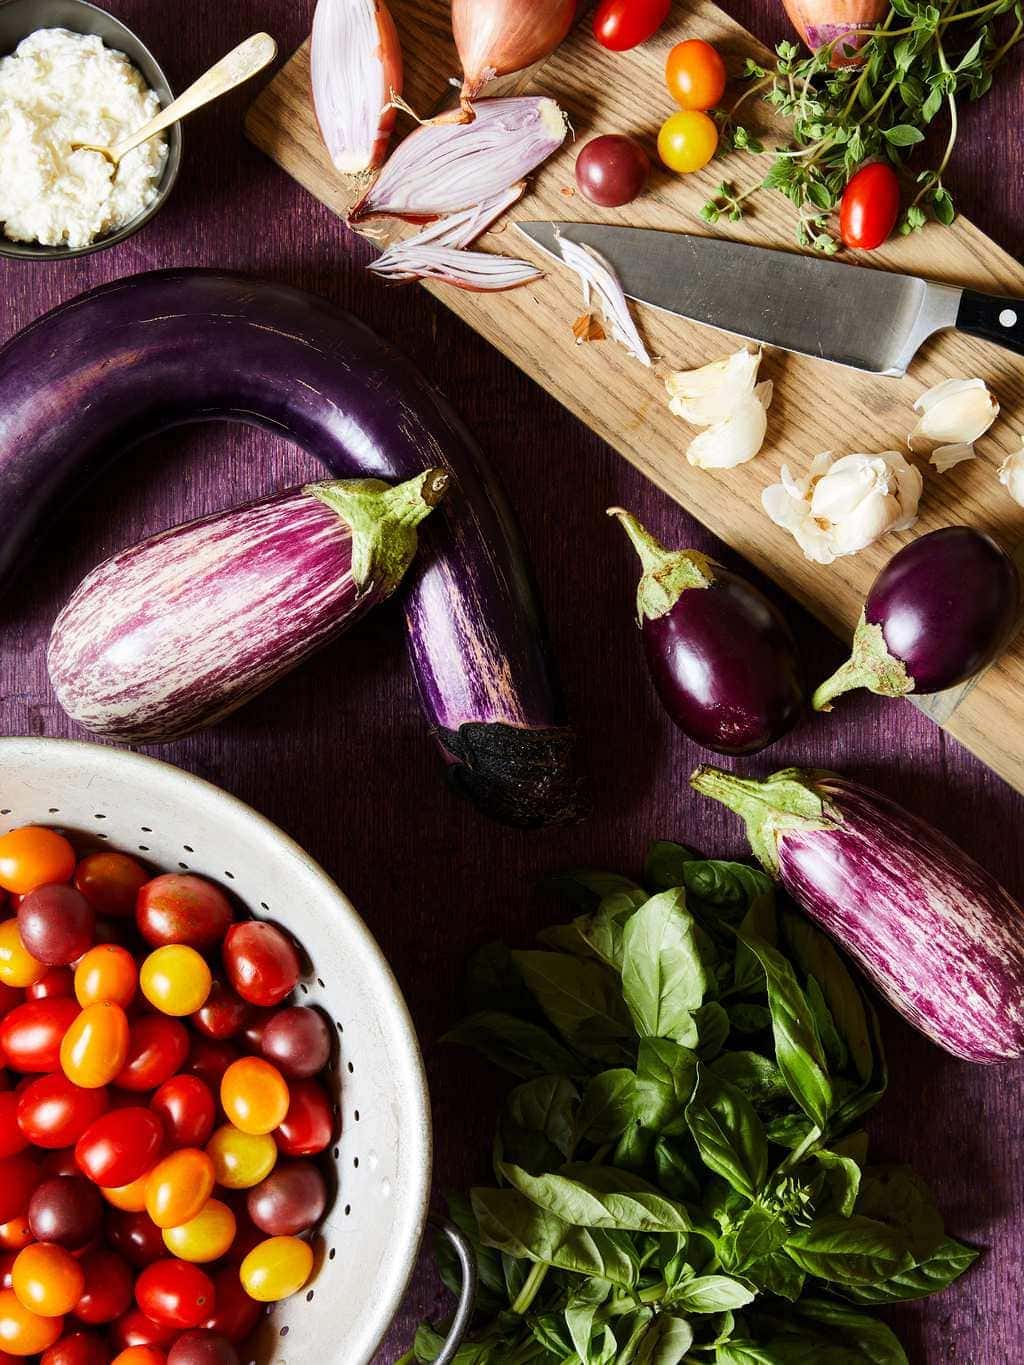 Tomato and Eggplant pasta ingredients